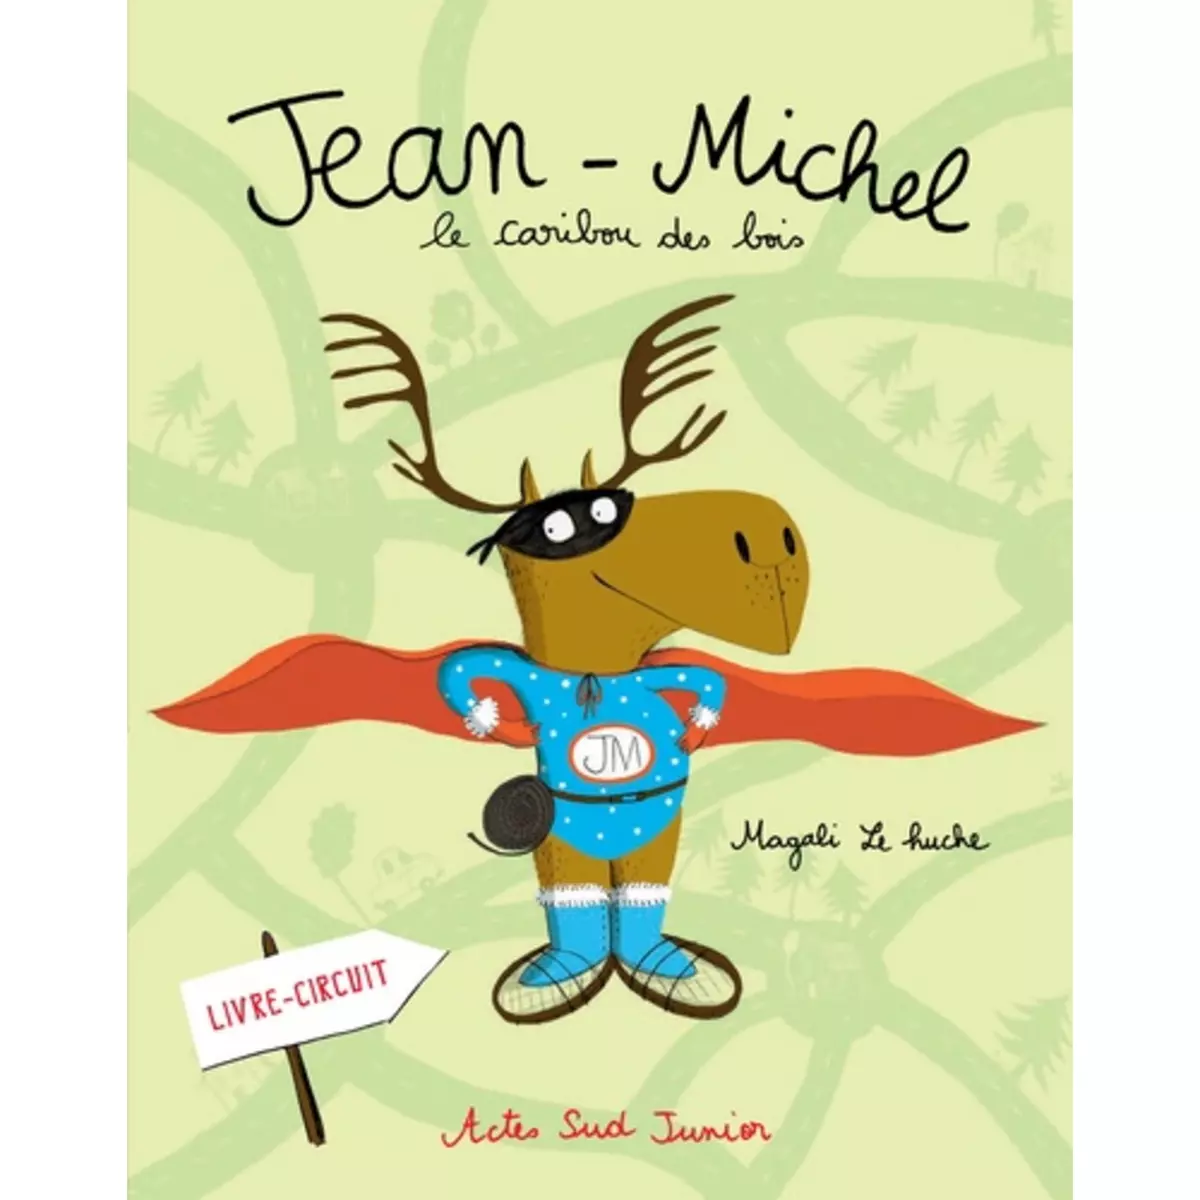  Jean-Michel : Le caribou des bois, Le Huche Magali